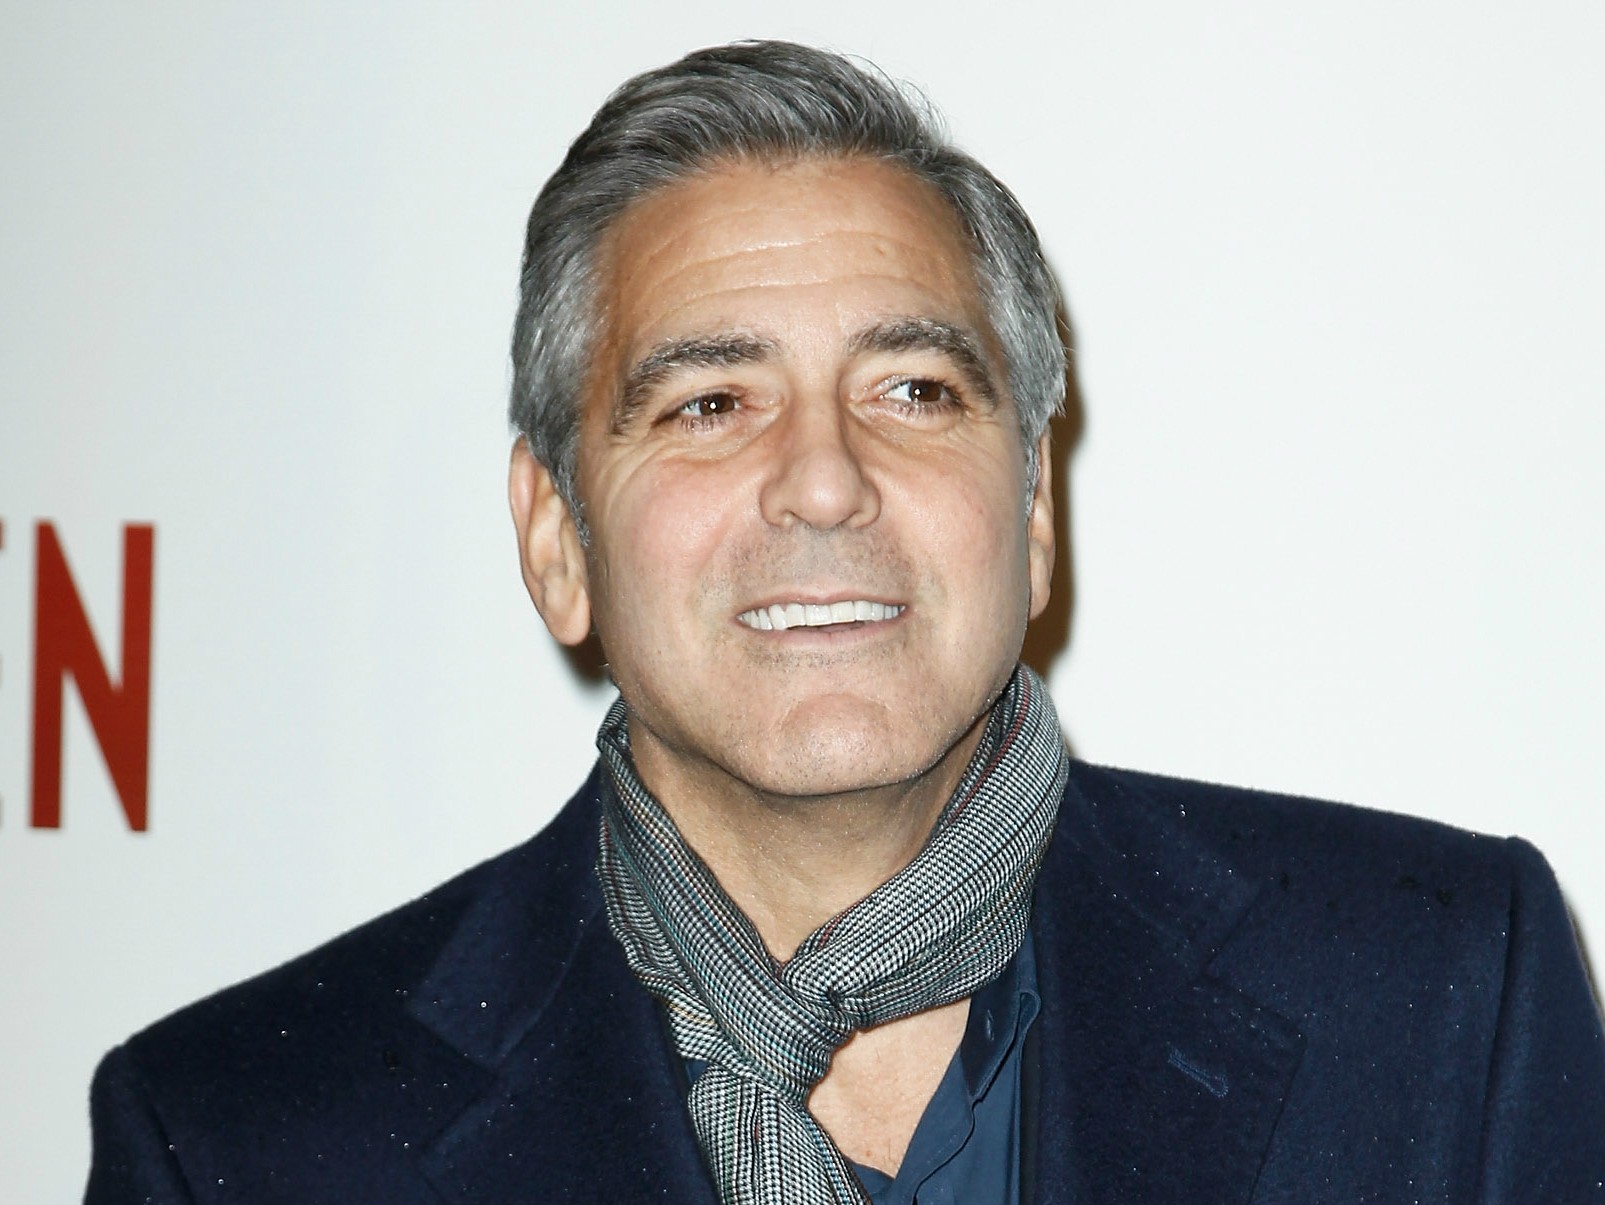 Para atuar em 'Gravidade' (2013), George Clooney fez várias exigências para a área próxima ao seu trailer no set: uma choupana personalizada, uma jacuzzi, um jardim com deque e uma quadra improvisada de basquete. (Foto: Getty Images)